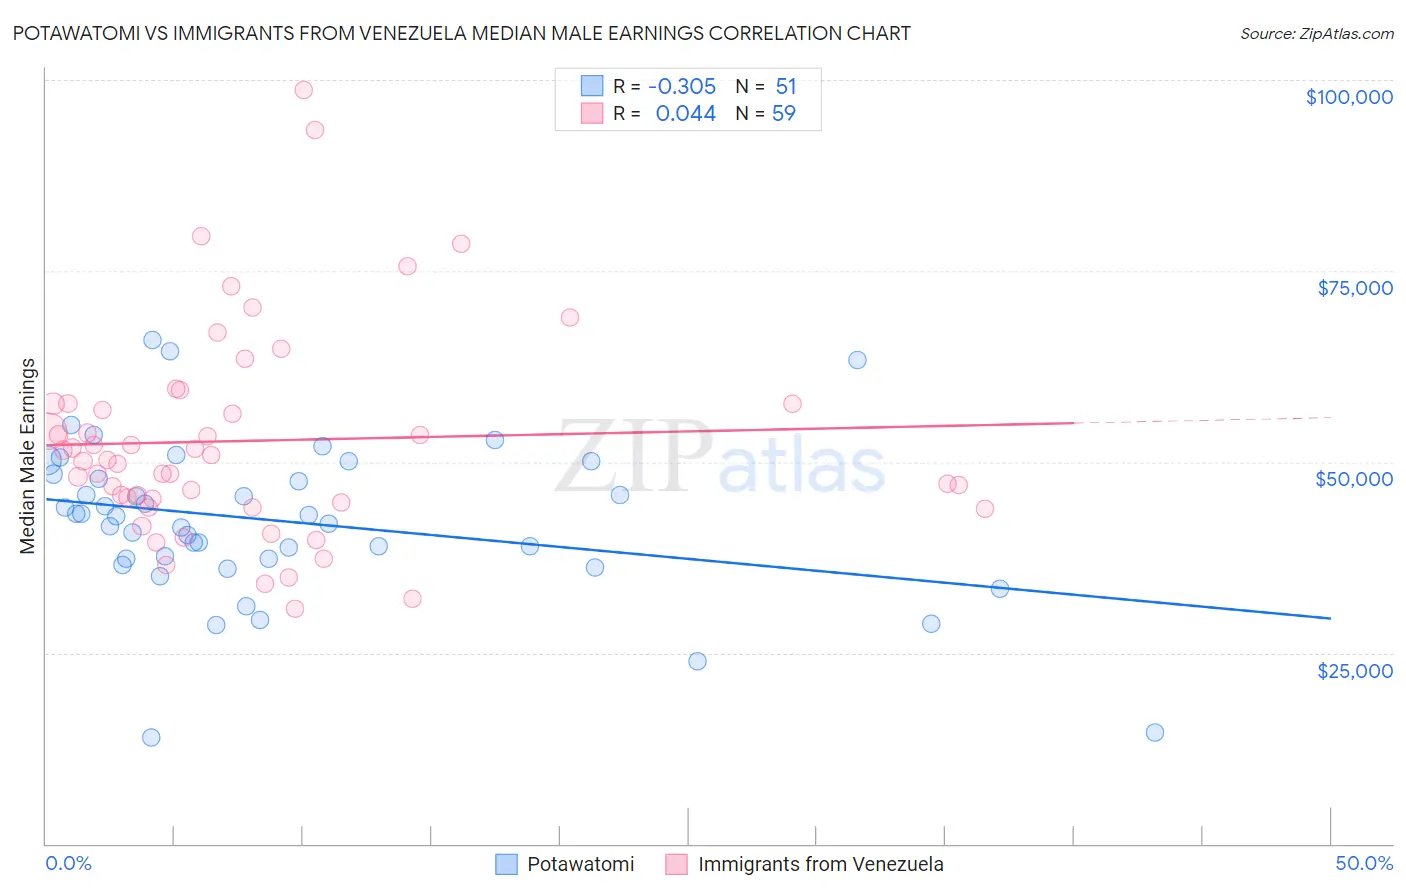 Potawatomi vs Immigrants from Venezuela Median Male Earnings